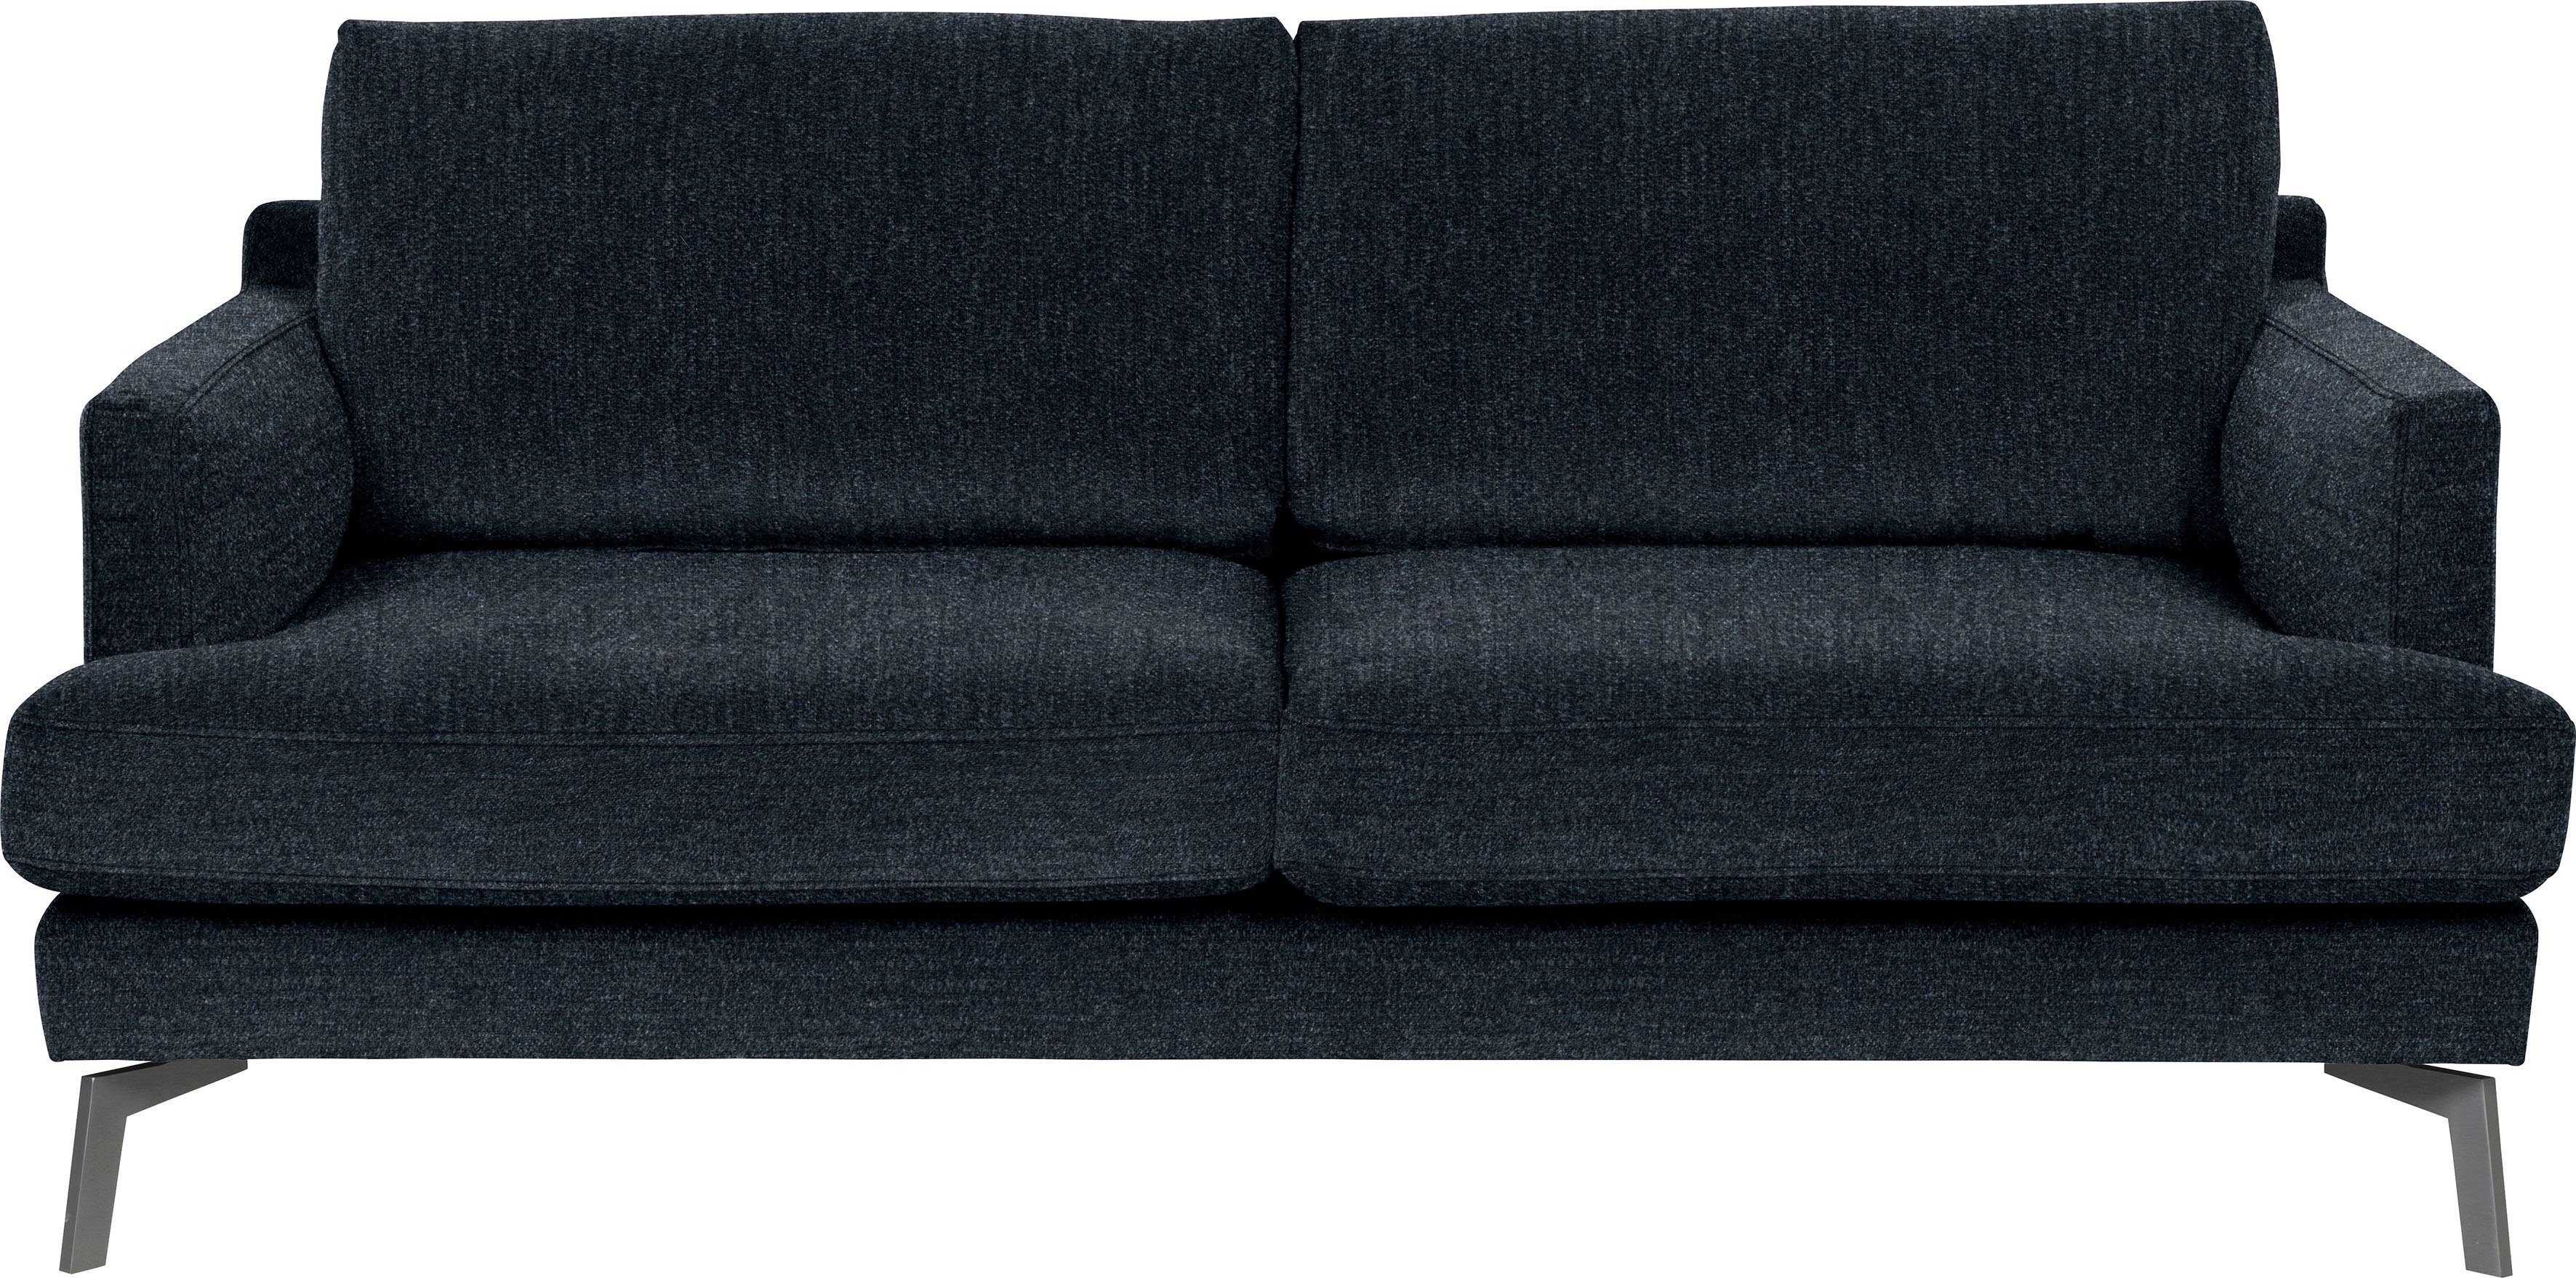 Saga, ein blu furninova im midnight Design skandinavischen Klassiker 2,5-Sitzer